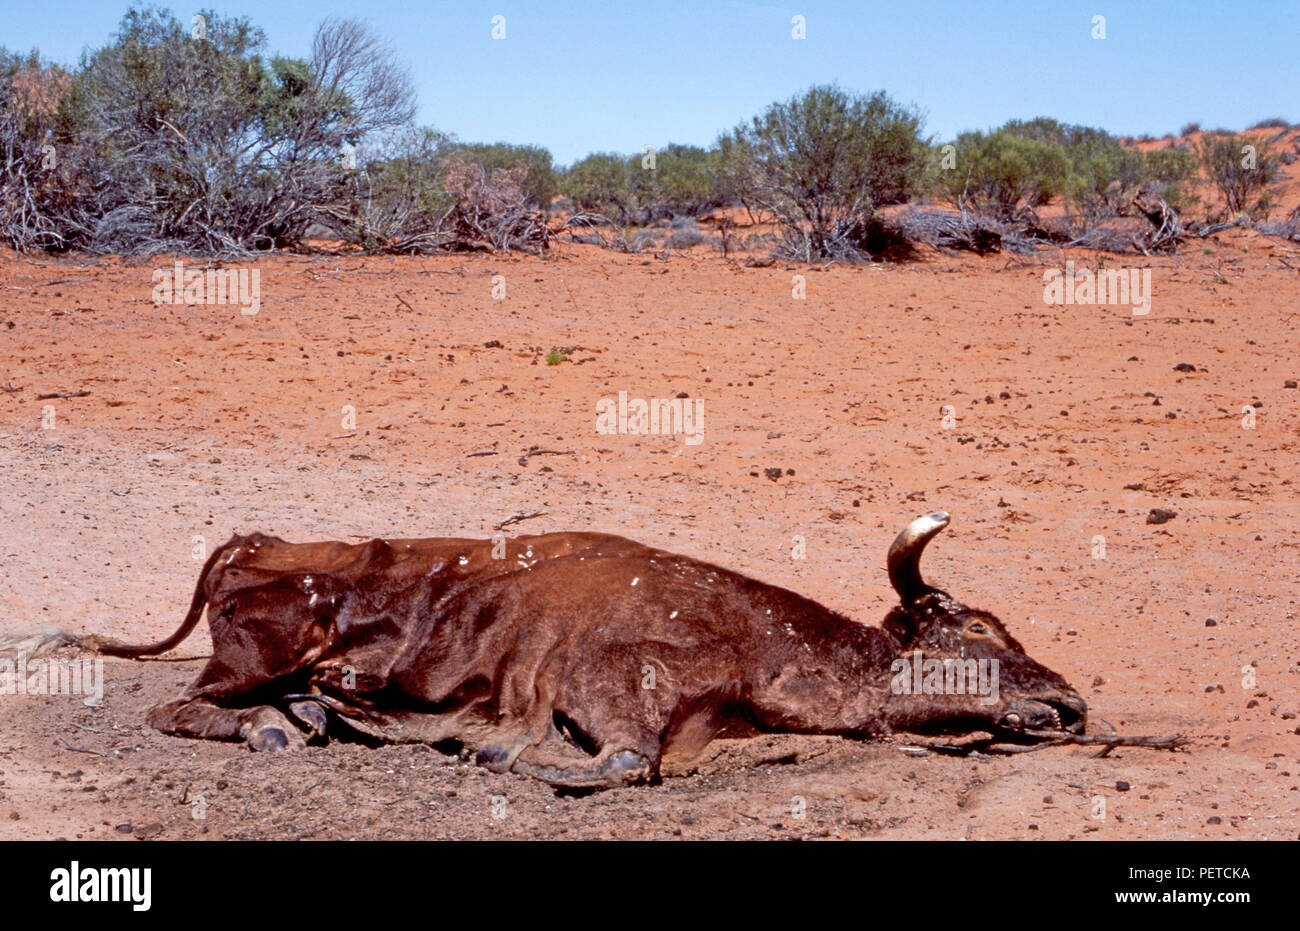 Los restos de una vaca muerta lo cual ha perecido debido a las condiciones extremas de sequía en el Territorio Norte de Australia. Foto de stock